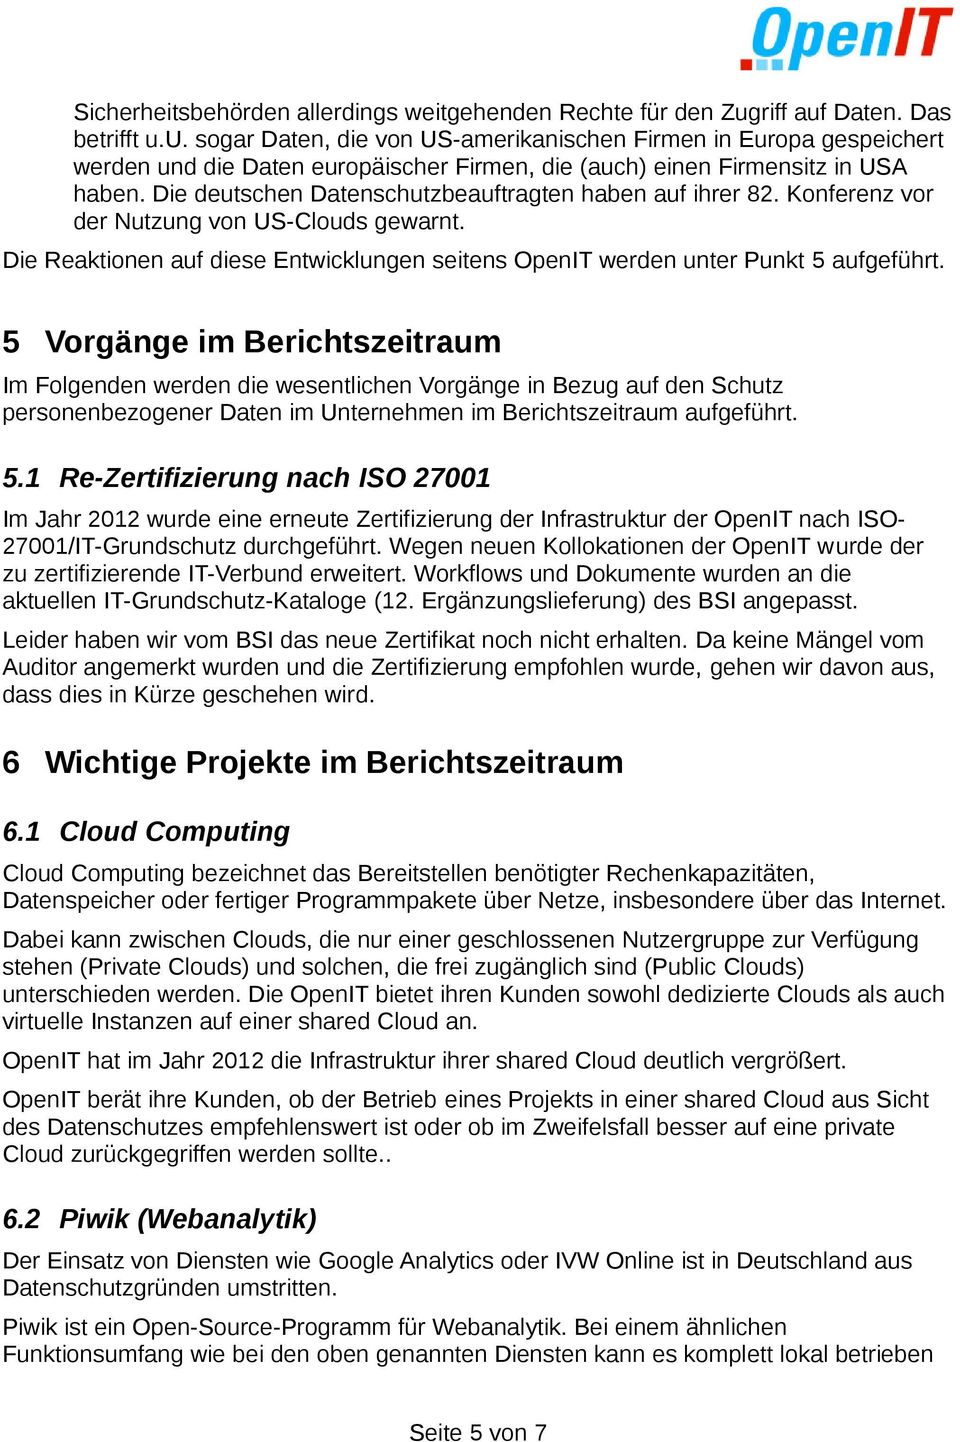 Die deutschen Datenschutzbeauftragten haben auf ihrer 82. Konferenz vor der Nutzung von US-Clouds gewarnt. Die Reaktionen auf diese Entwicklungen seitens OpenIT werden unter Punkt 5 aufgeführt.